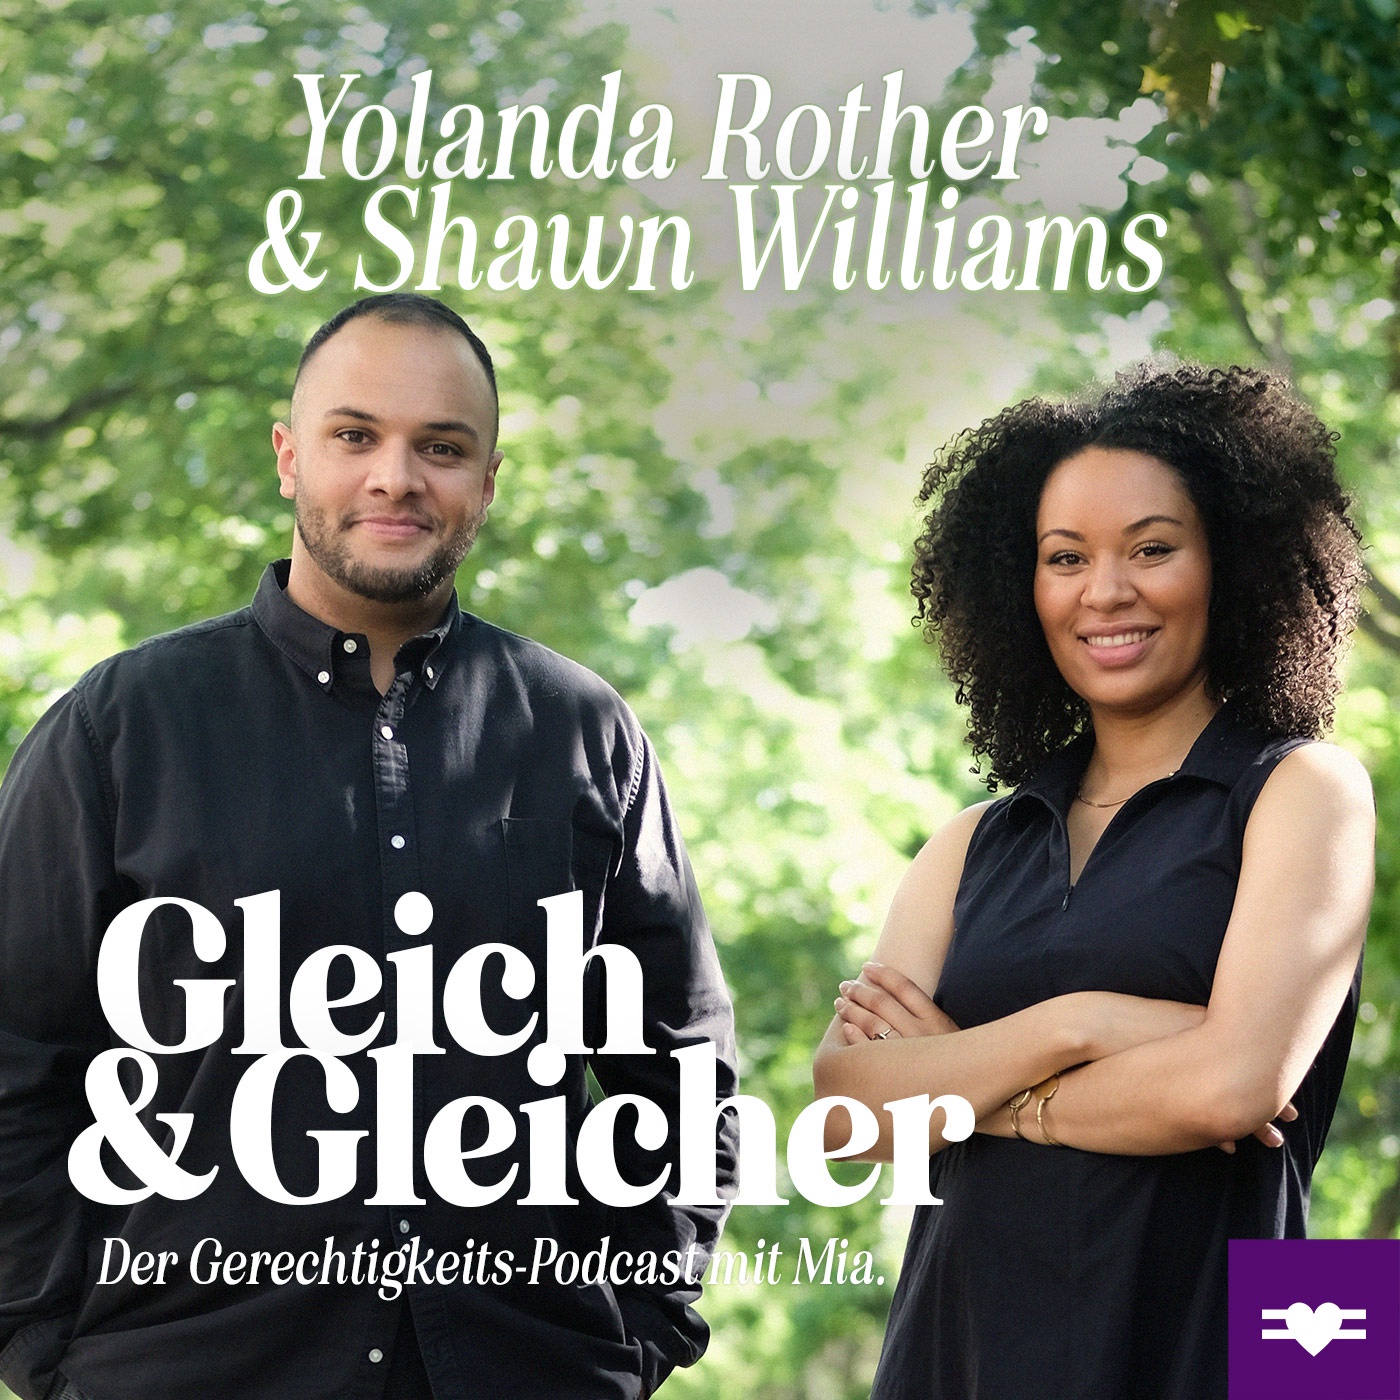 Yolanda Rother & Shawn Williams über Diversität, Chancengleichheit & Impact